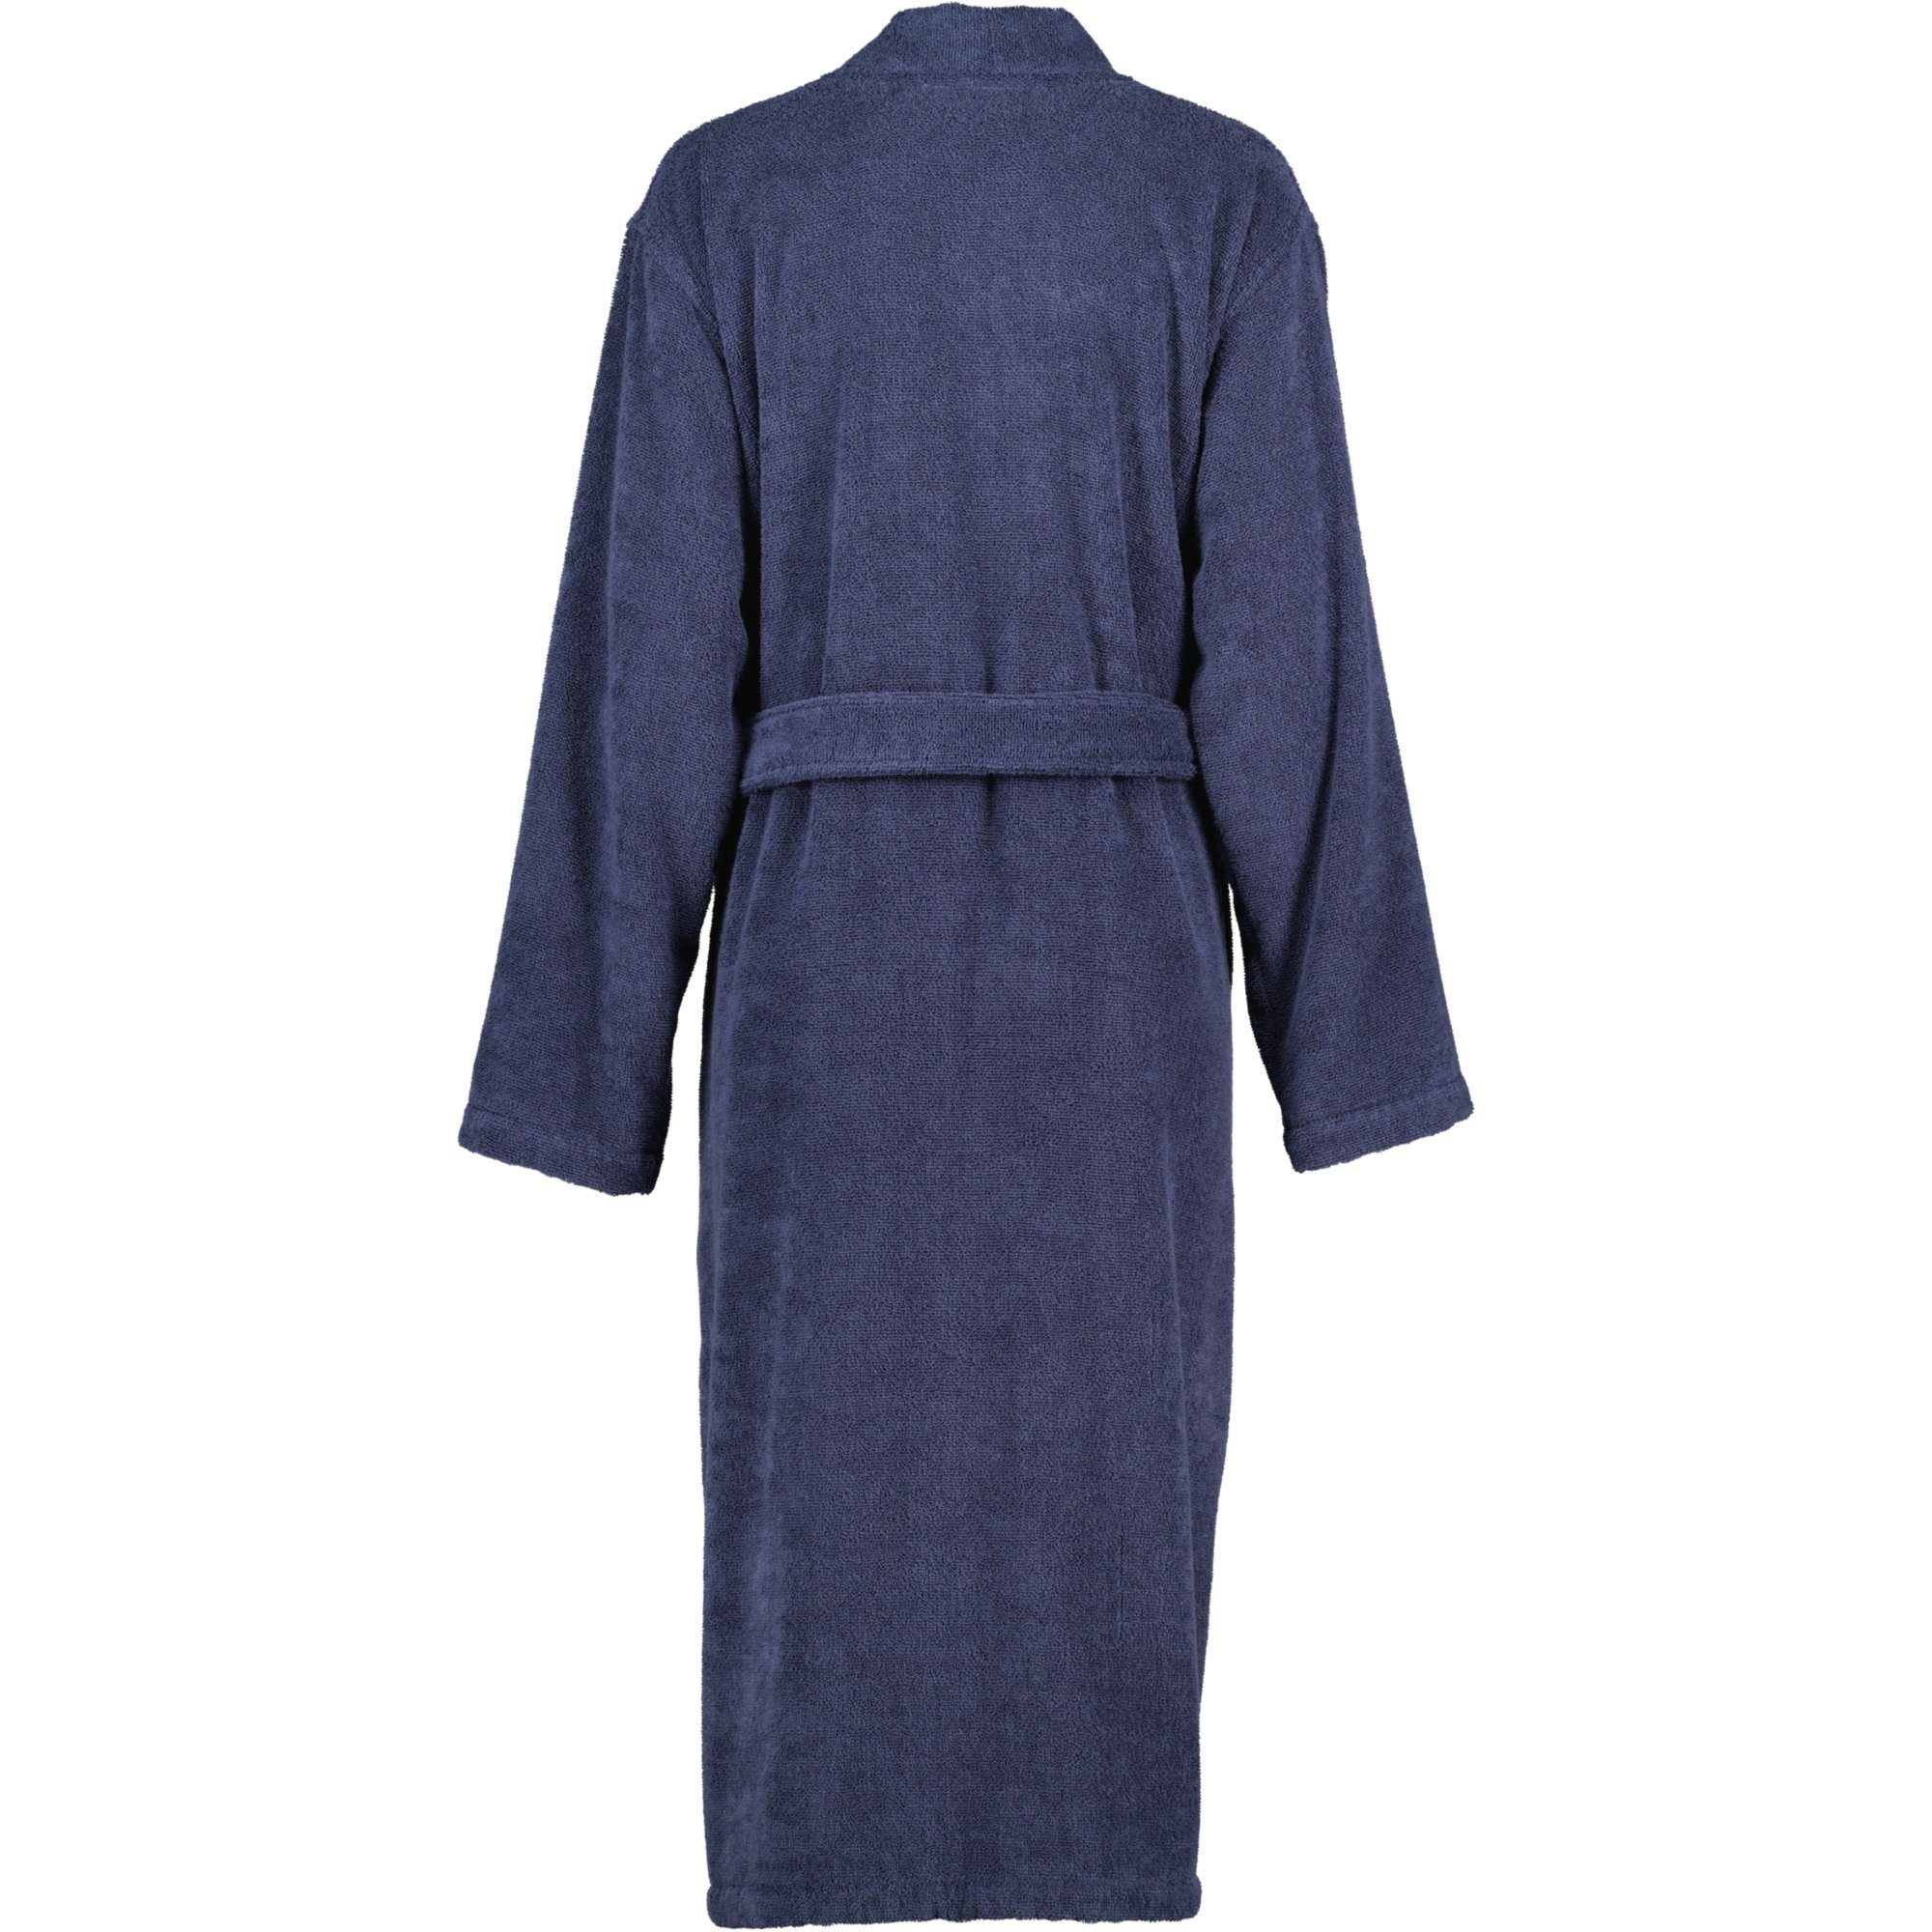 Kimono, Home Blau 826 Frottier, Damenbademantel Kimono Uni Cawö 100% Baumwolle